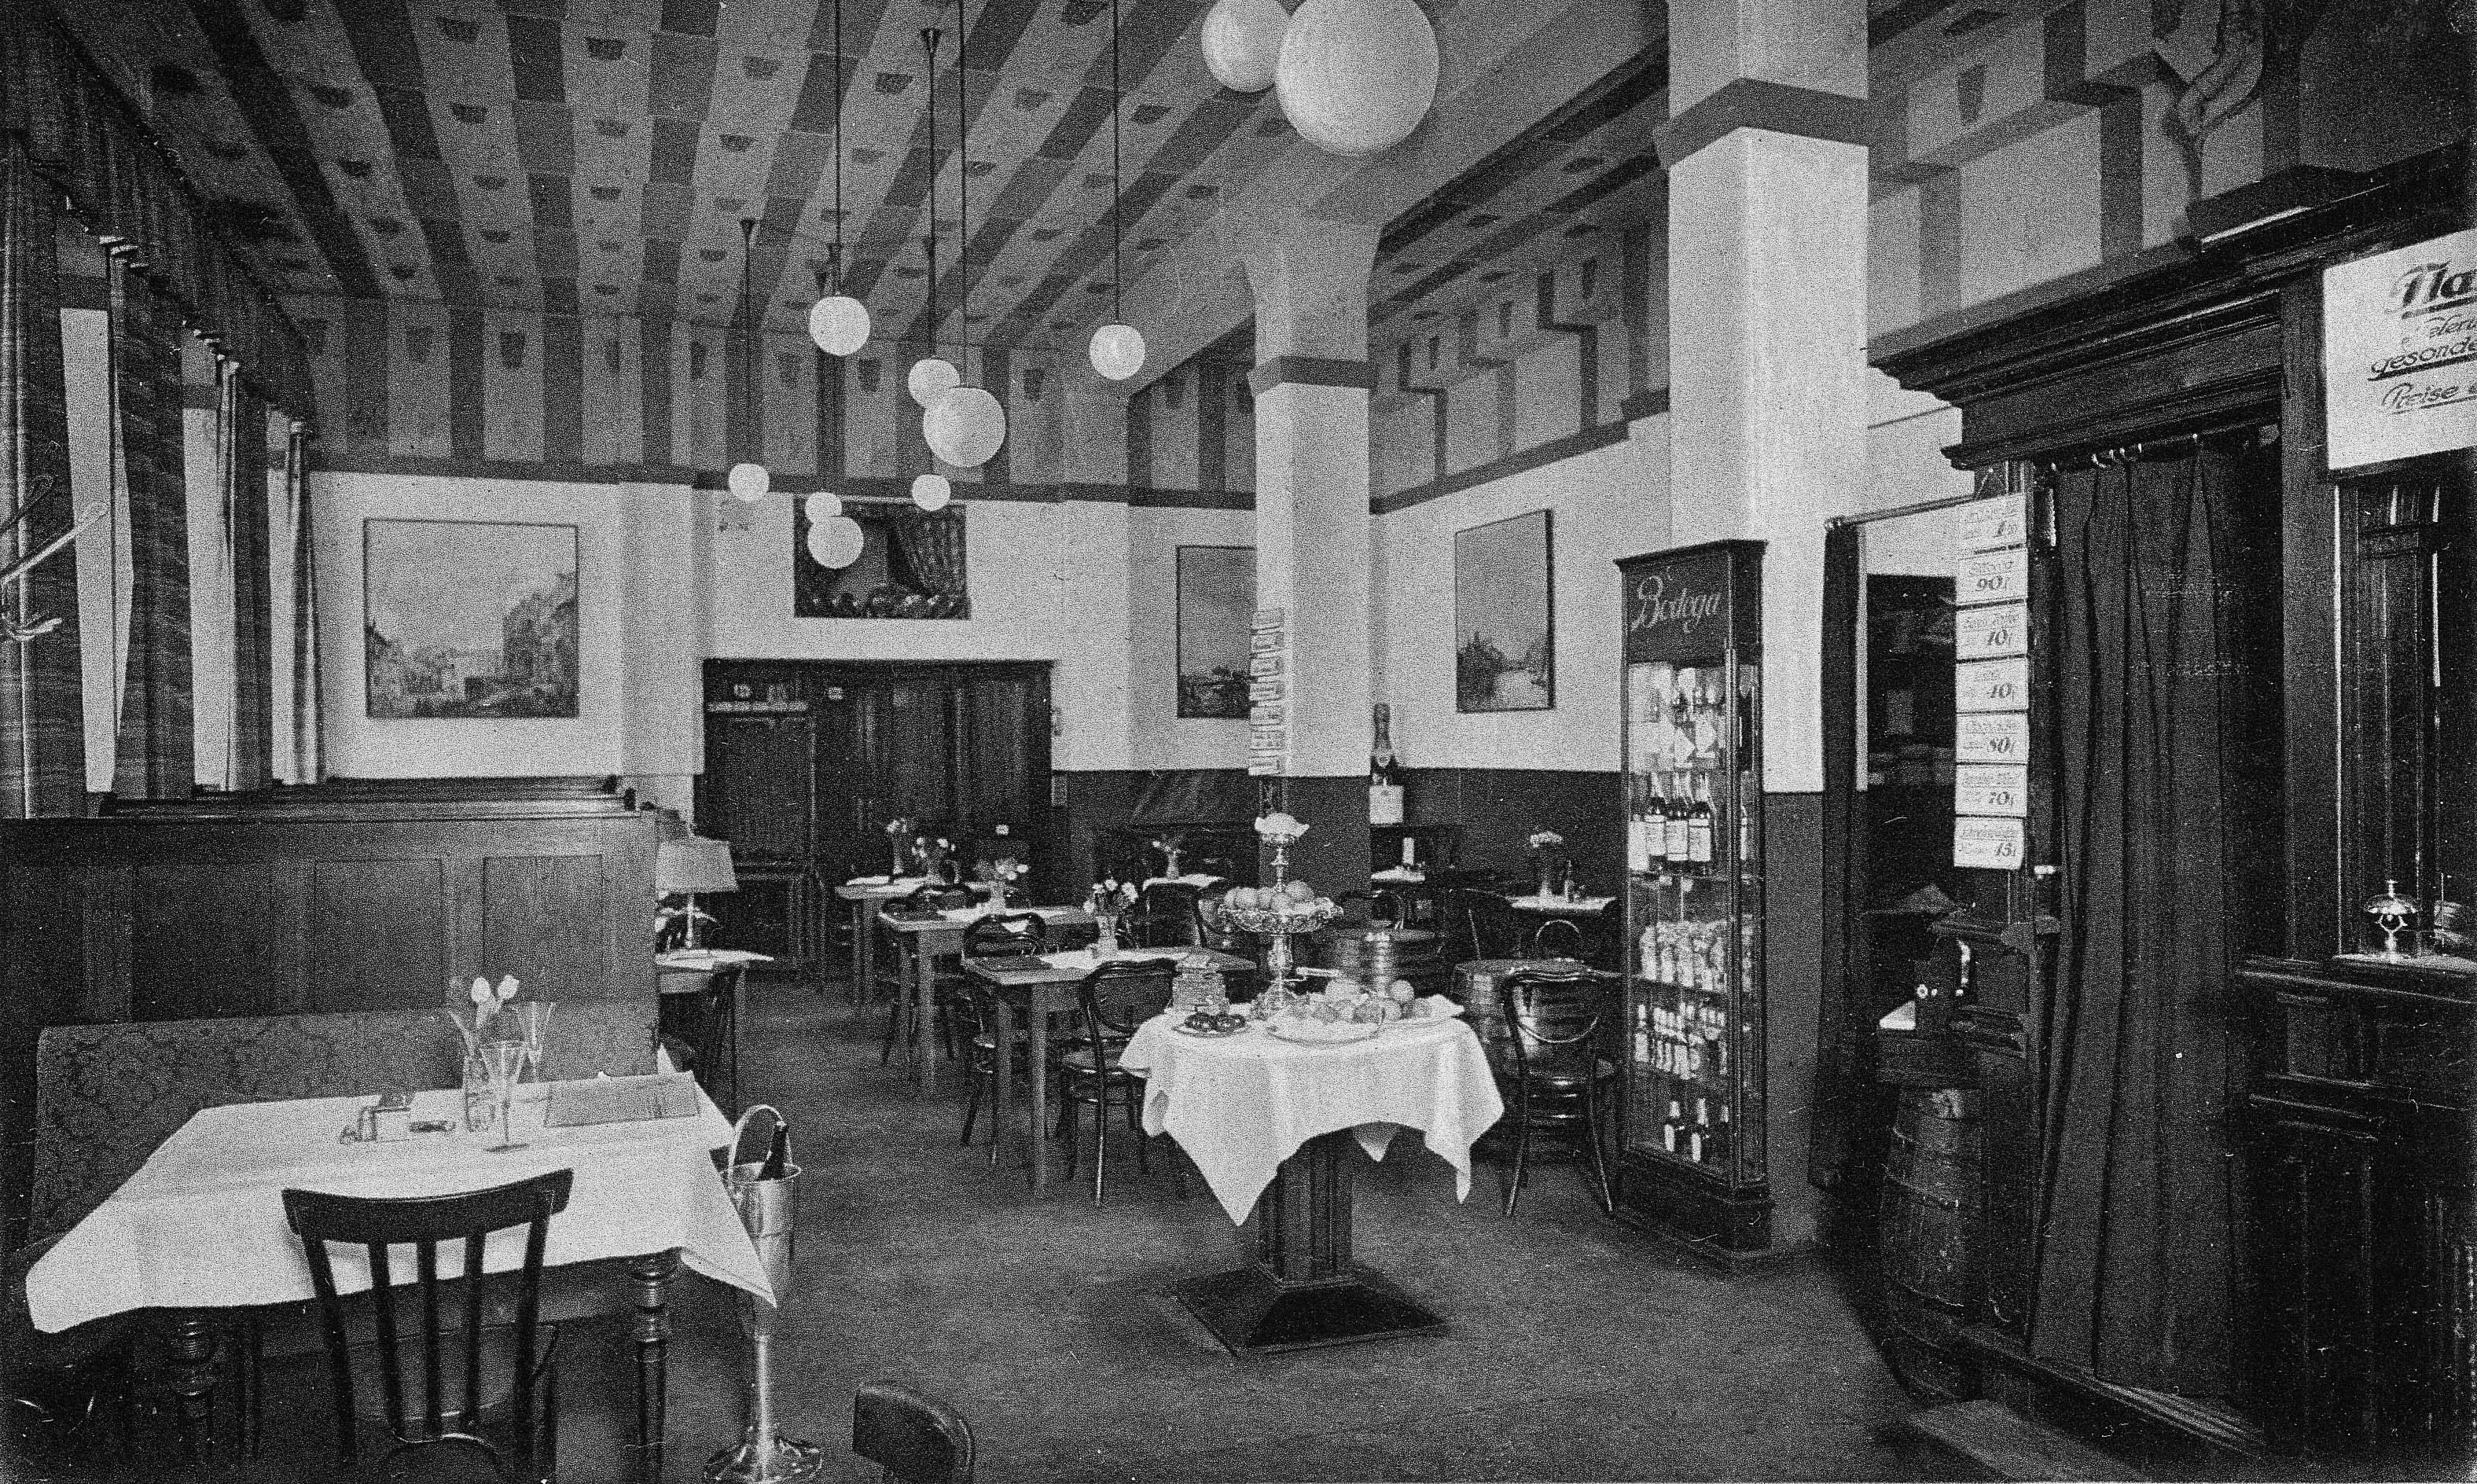 München Maffeistrasse 4, italienische Gaststätte Bodega, von Universität über Ludwig- und Theatinerstrasse 1,4 km, Postkarte gelaufen 17.7.1938, Privatbesitz